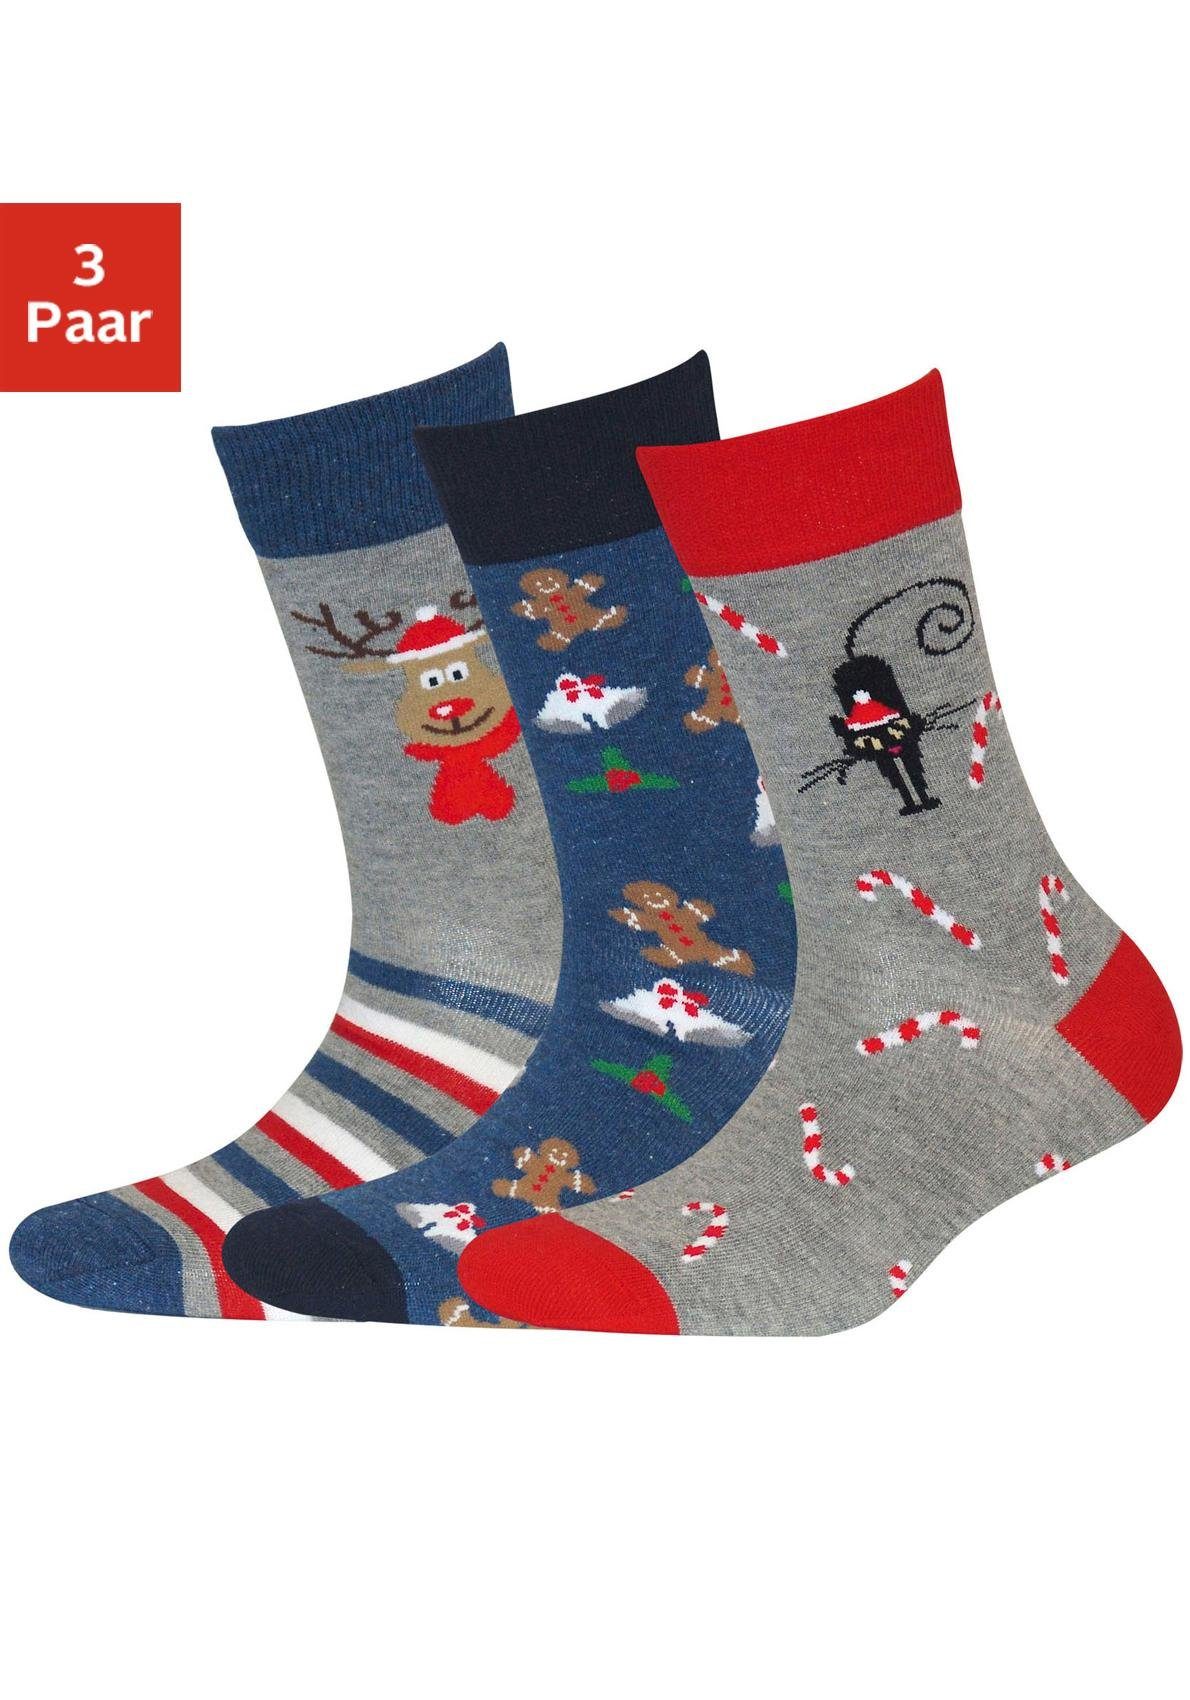 H.I.S Socken (3-Paar) mit Weihnachts-Design jeans-grau-rot-gemustert